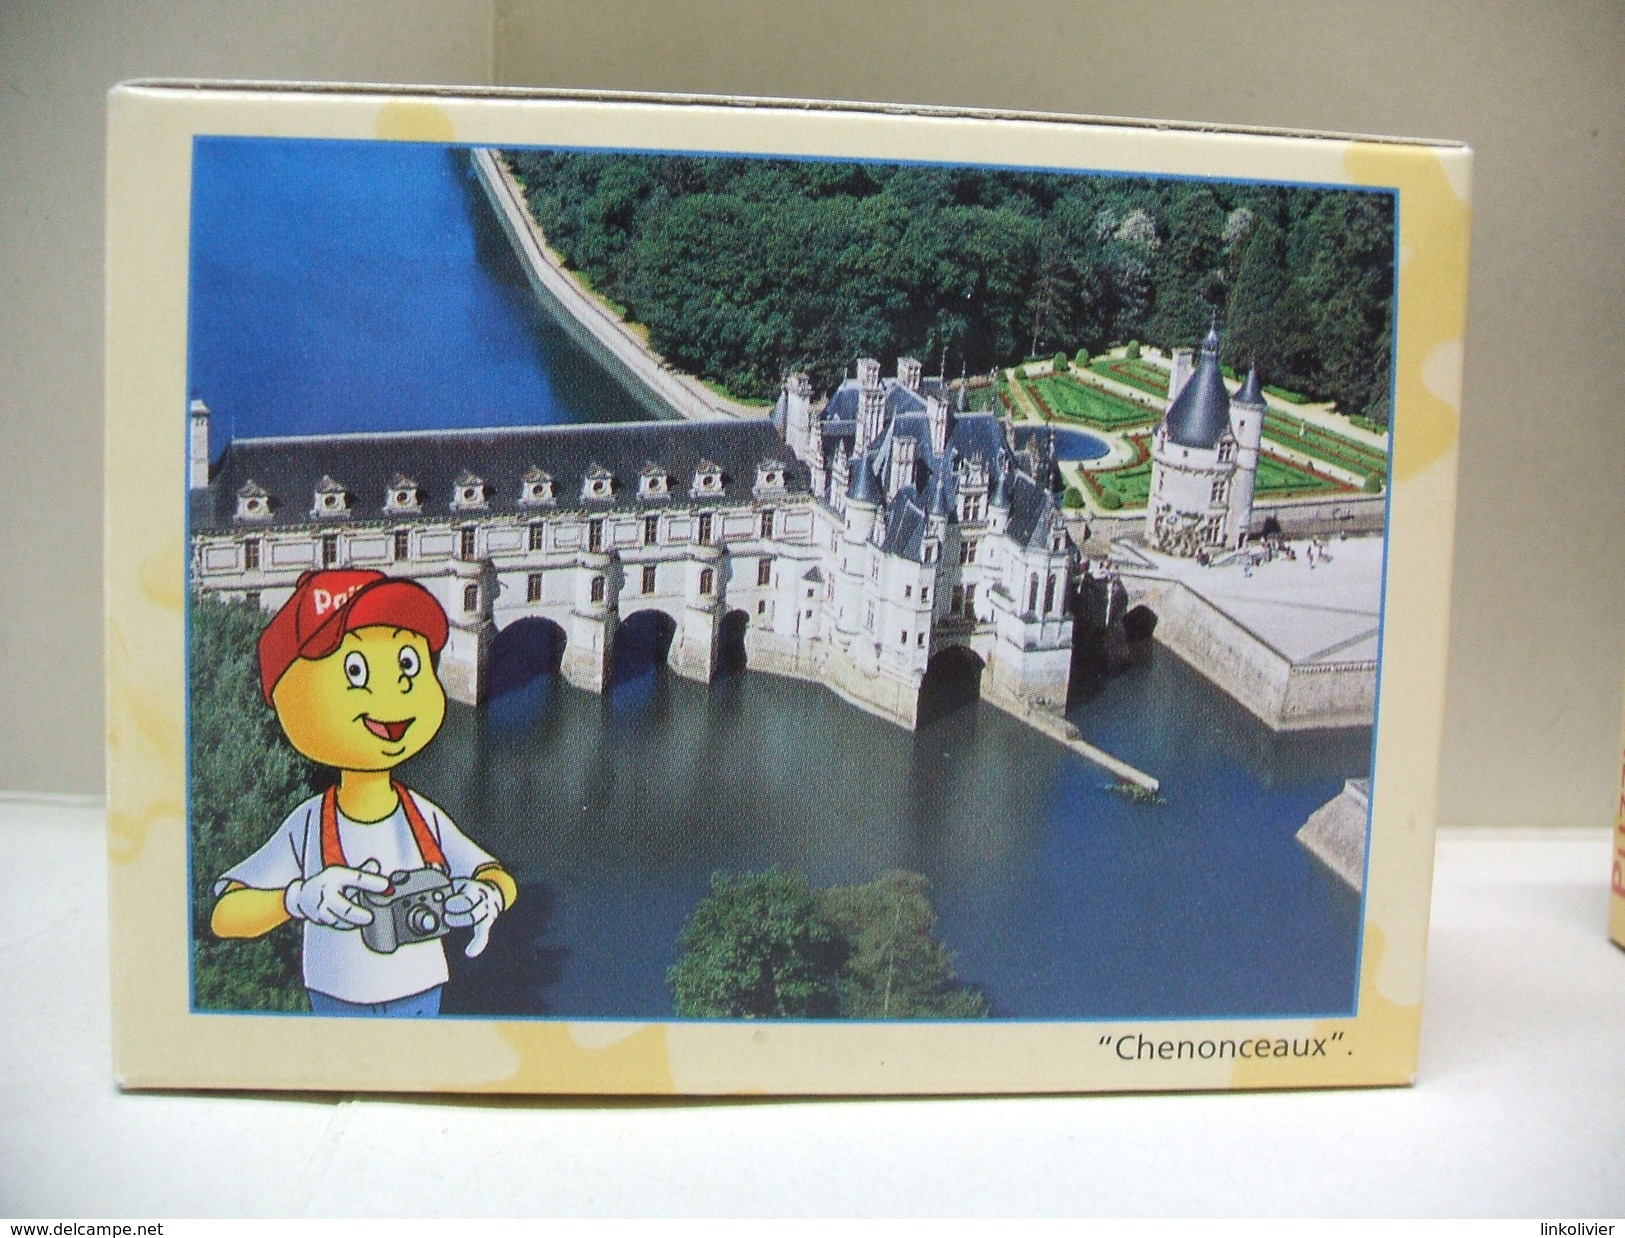 5 PUZZLES COURTEPAILLE - Puzzle 36 pièces : 2 x Etretat / Chenonceaux / Les remparts de Carcassonne / Mont-Saint-Michel